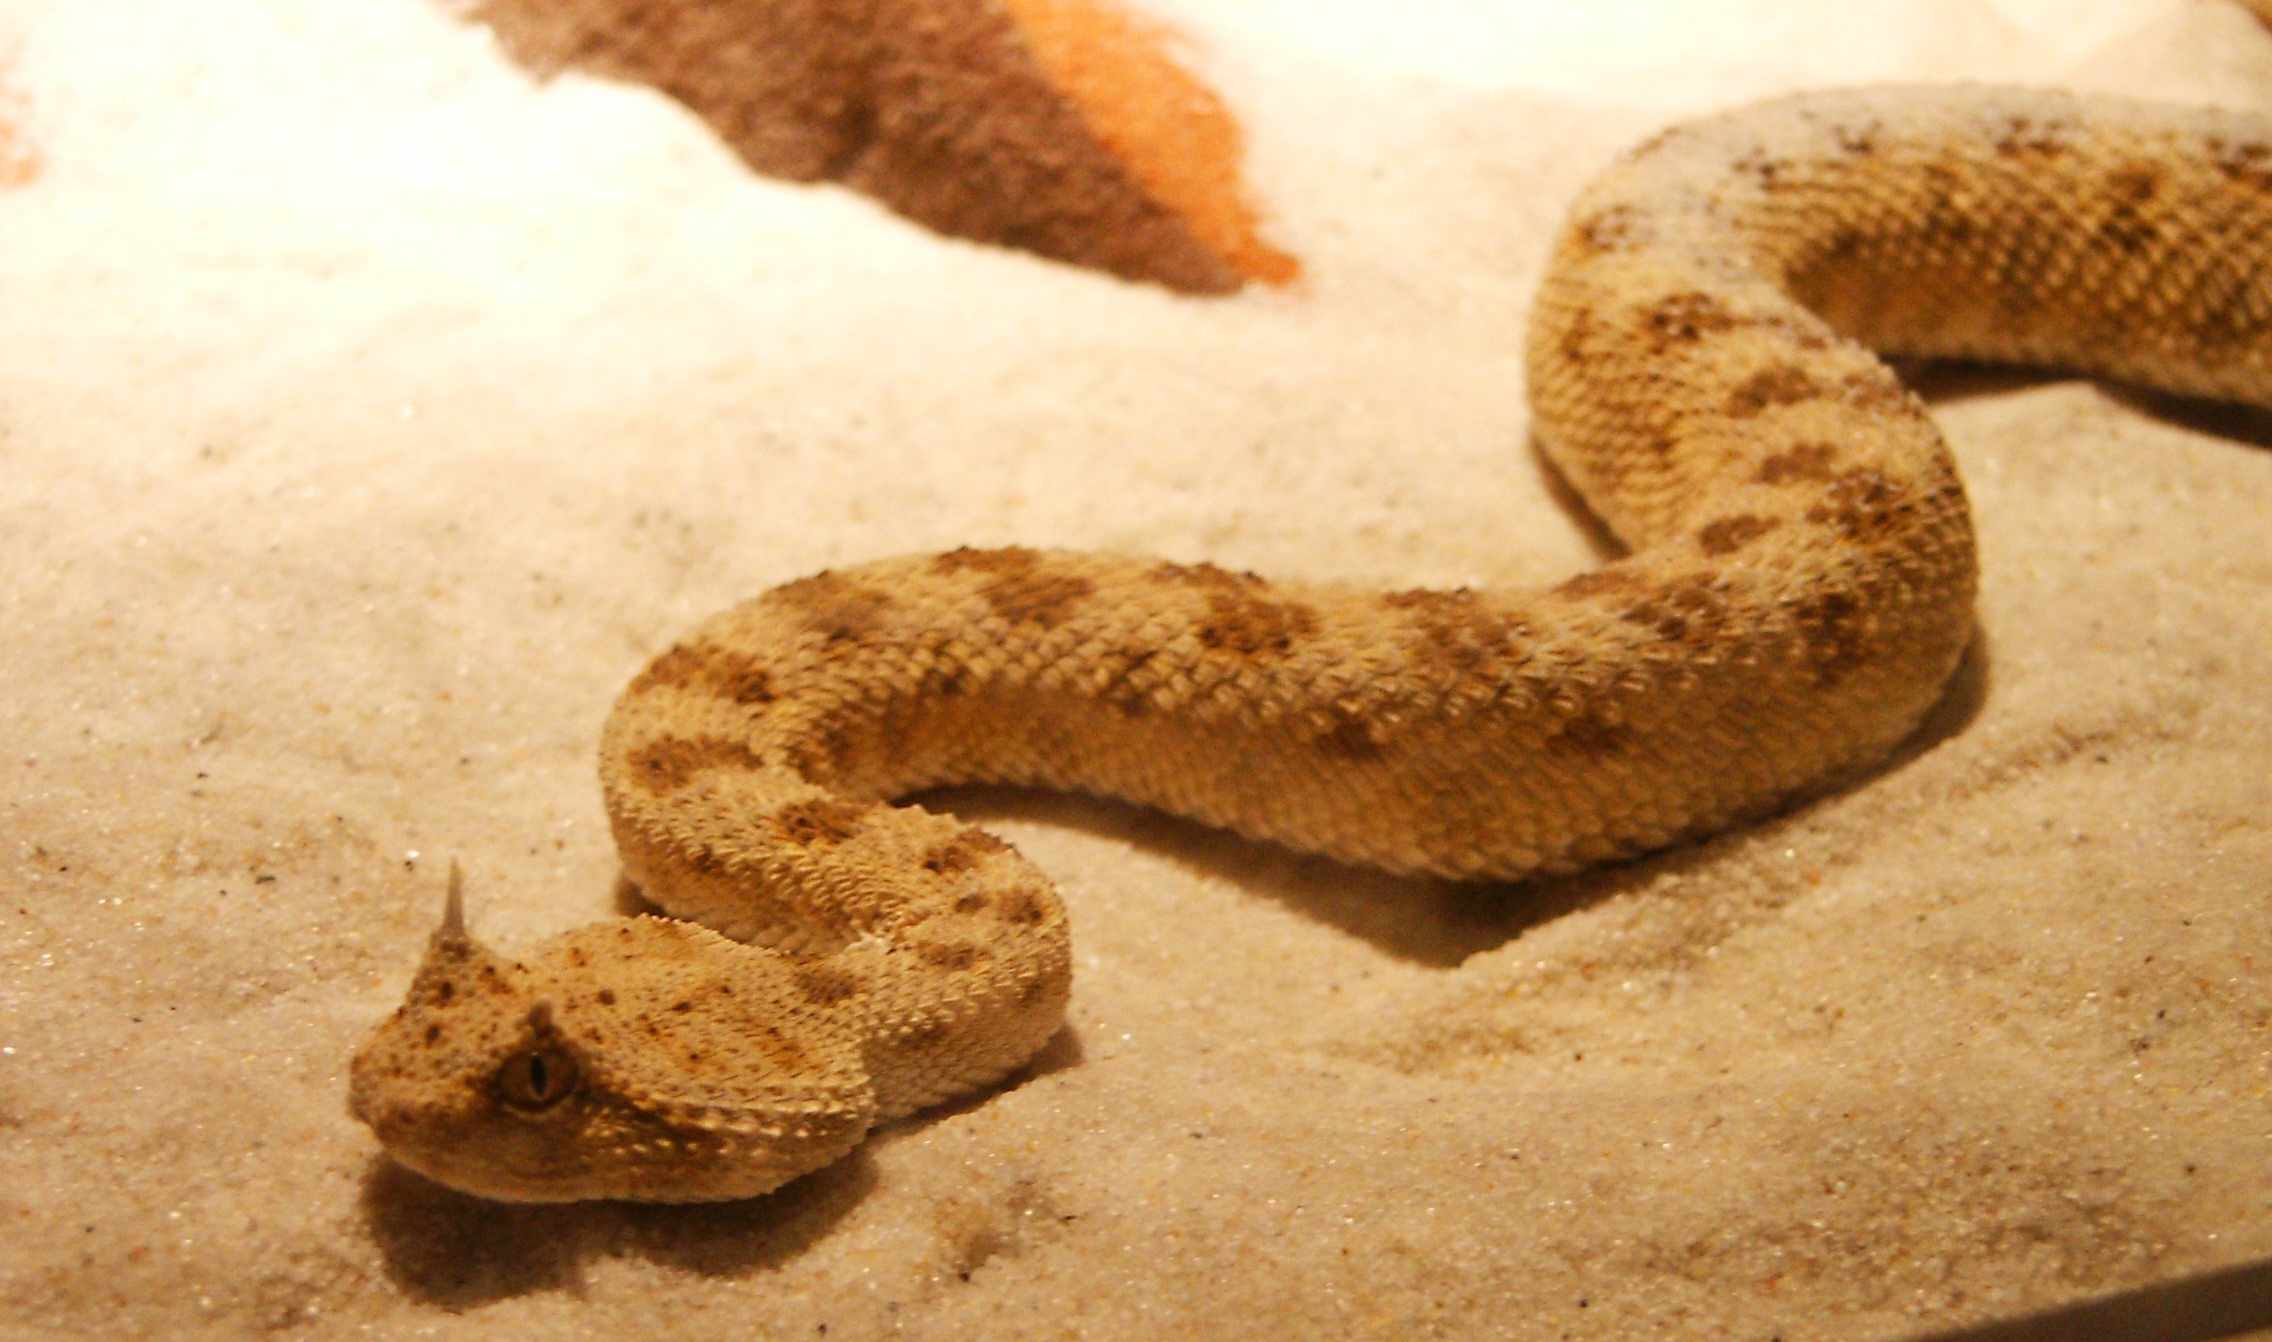 Horned Viper On Sand In Aquarium